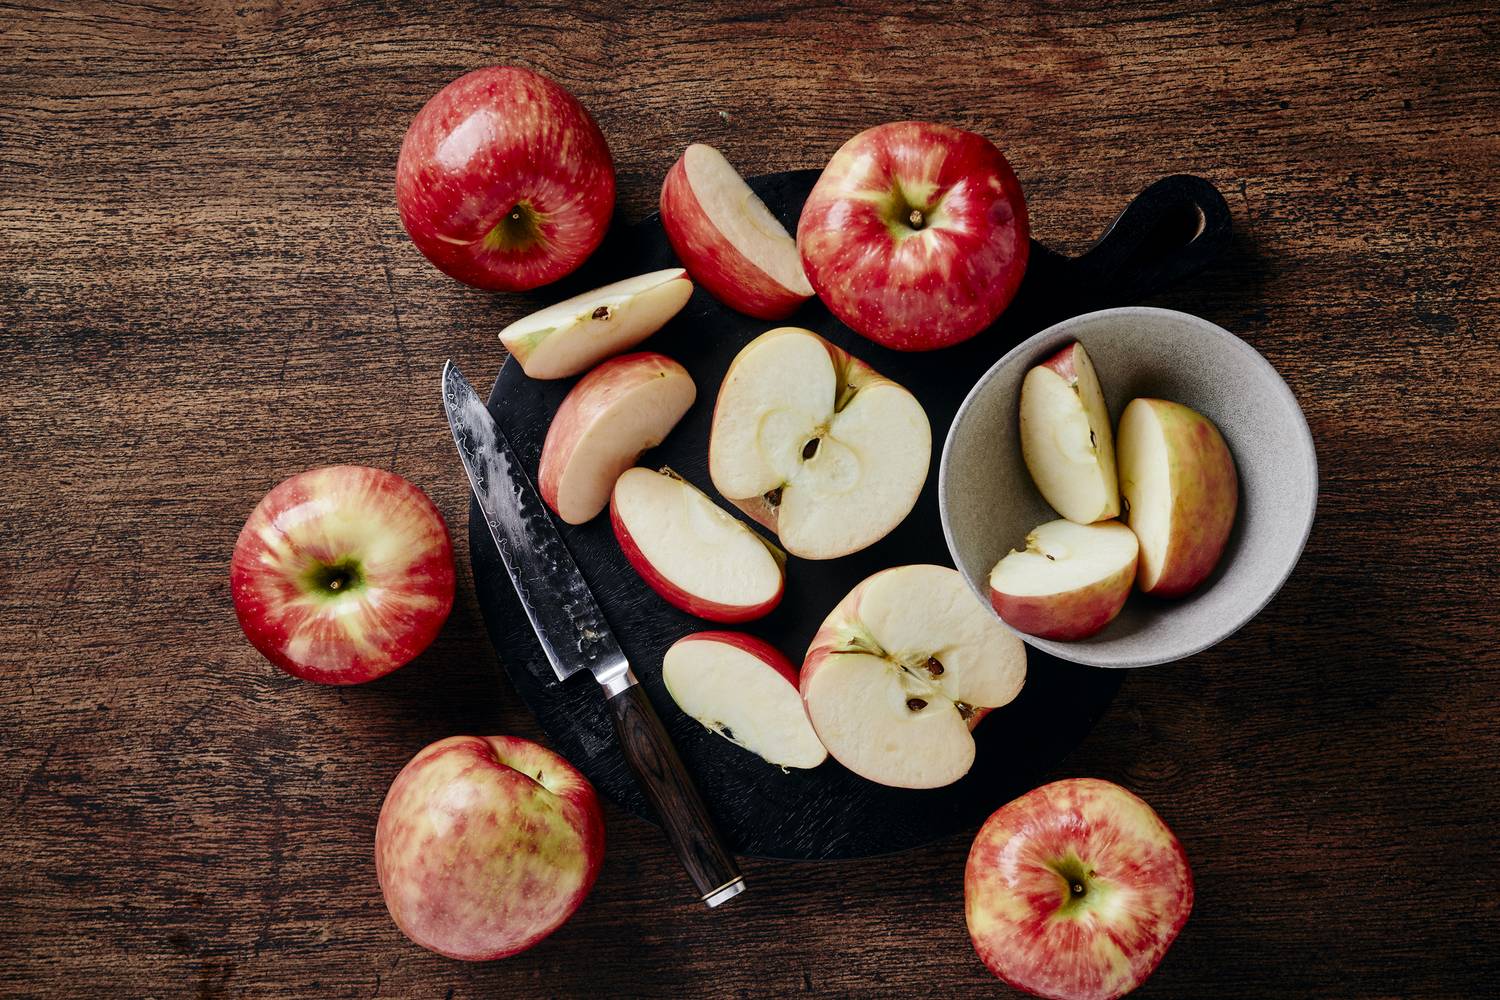 A téli gyümölcsök legelérhetőbb és egyik legegészségesebb darabja az alma. Rengeteg rostot és vitamint tartalmaz, emellett kalóriatartalma sem magas. 150 gramm belőle mindössze 78 kalória, ami egy nagyobb gyümölcsnek felel meg.